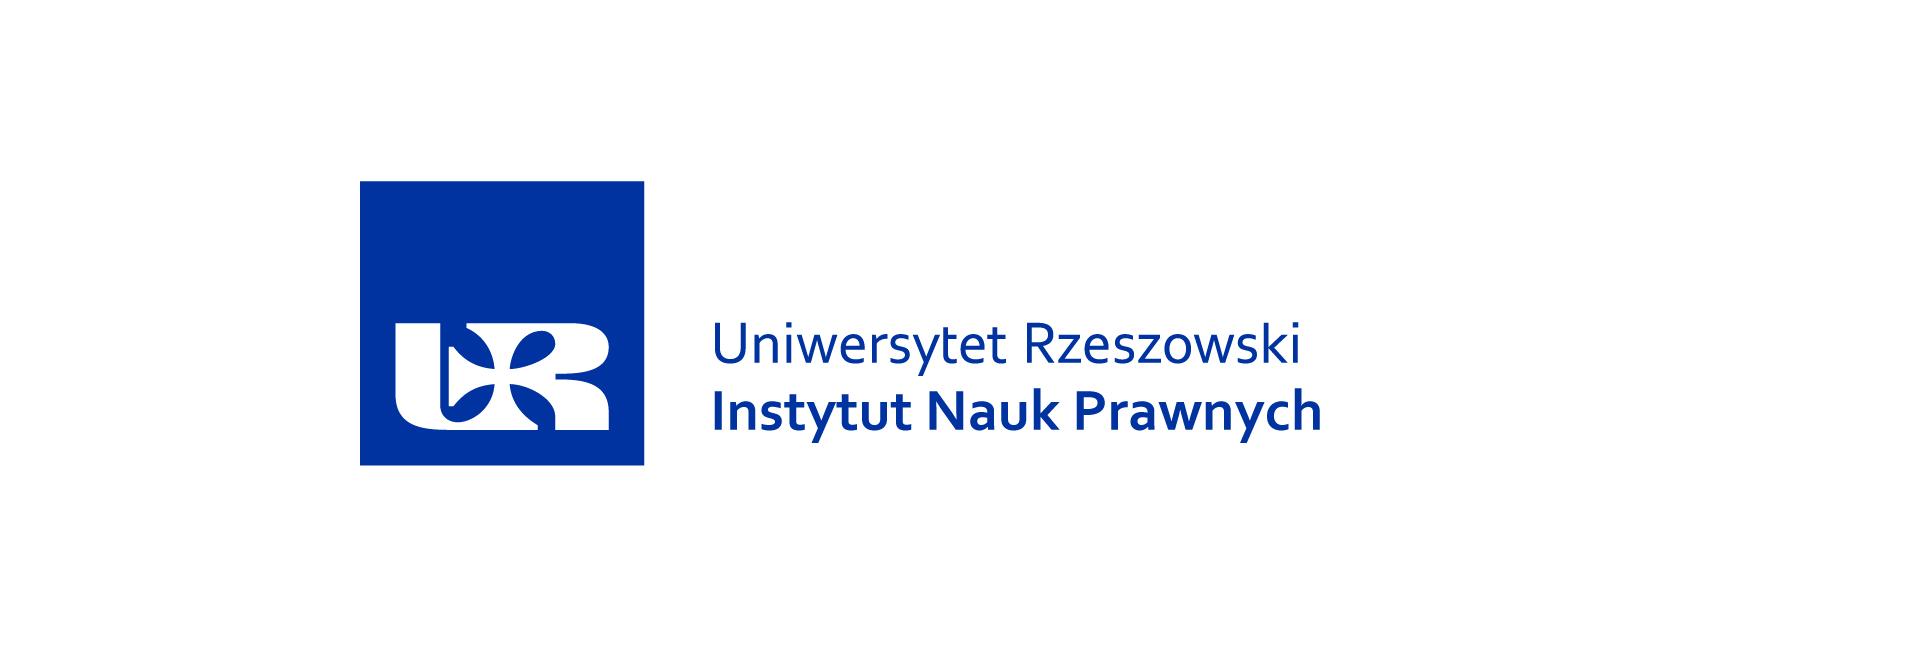 Uniwersytet Rzeszowski, Instytut Nauk Prawnych, logo